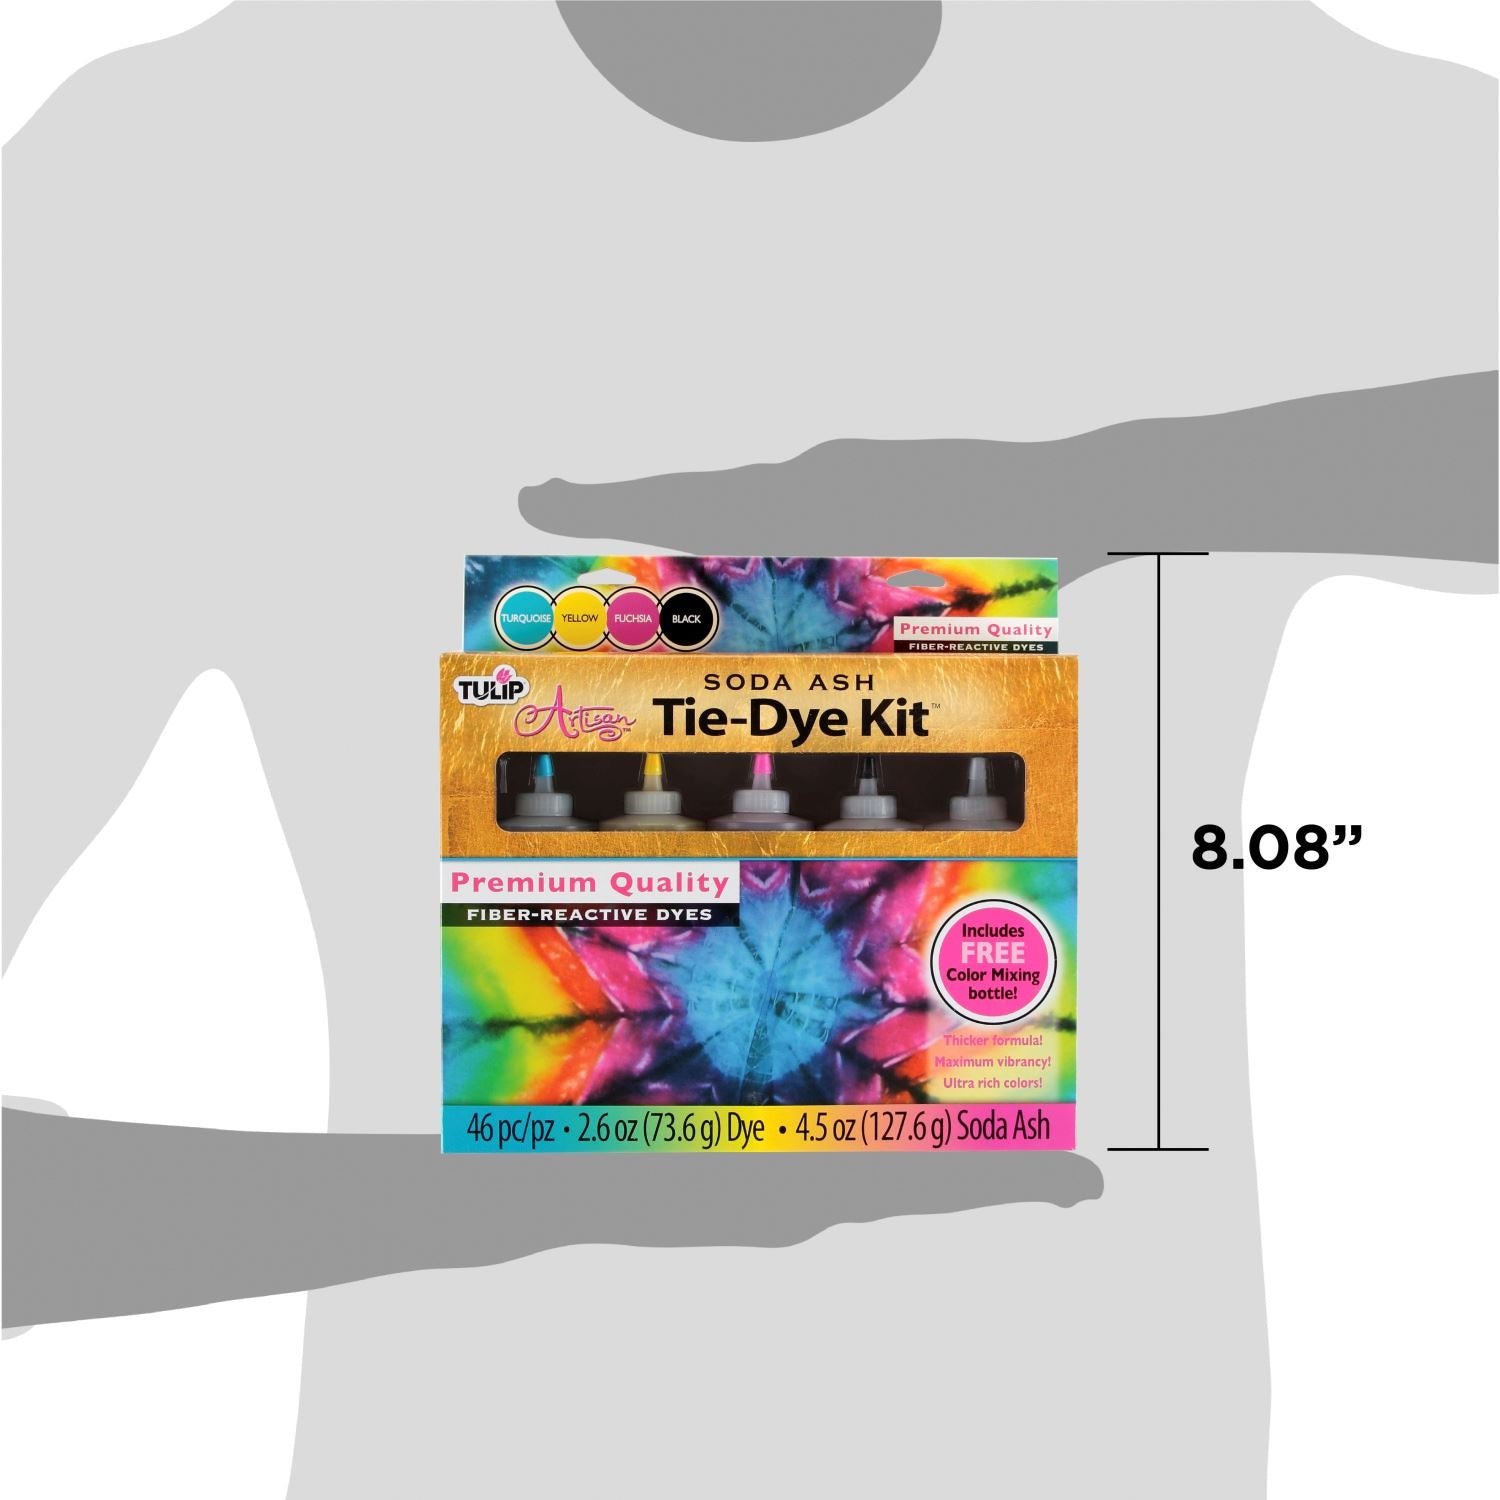 Tie-Dye Socks – Desert Dyes